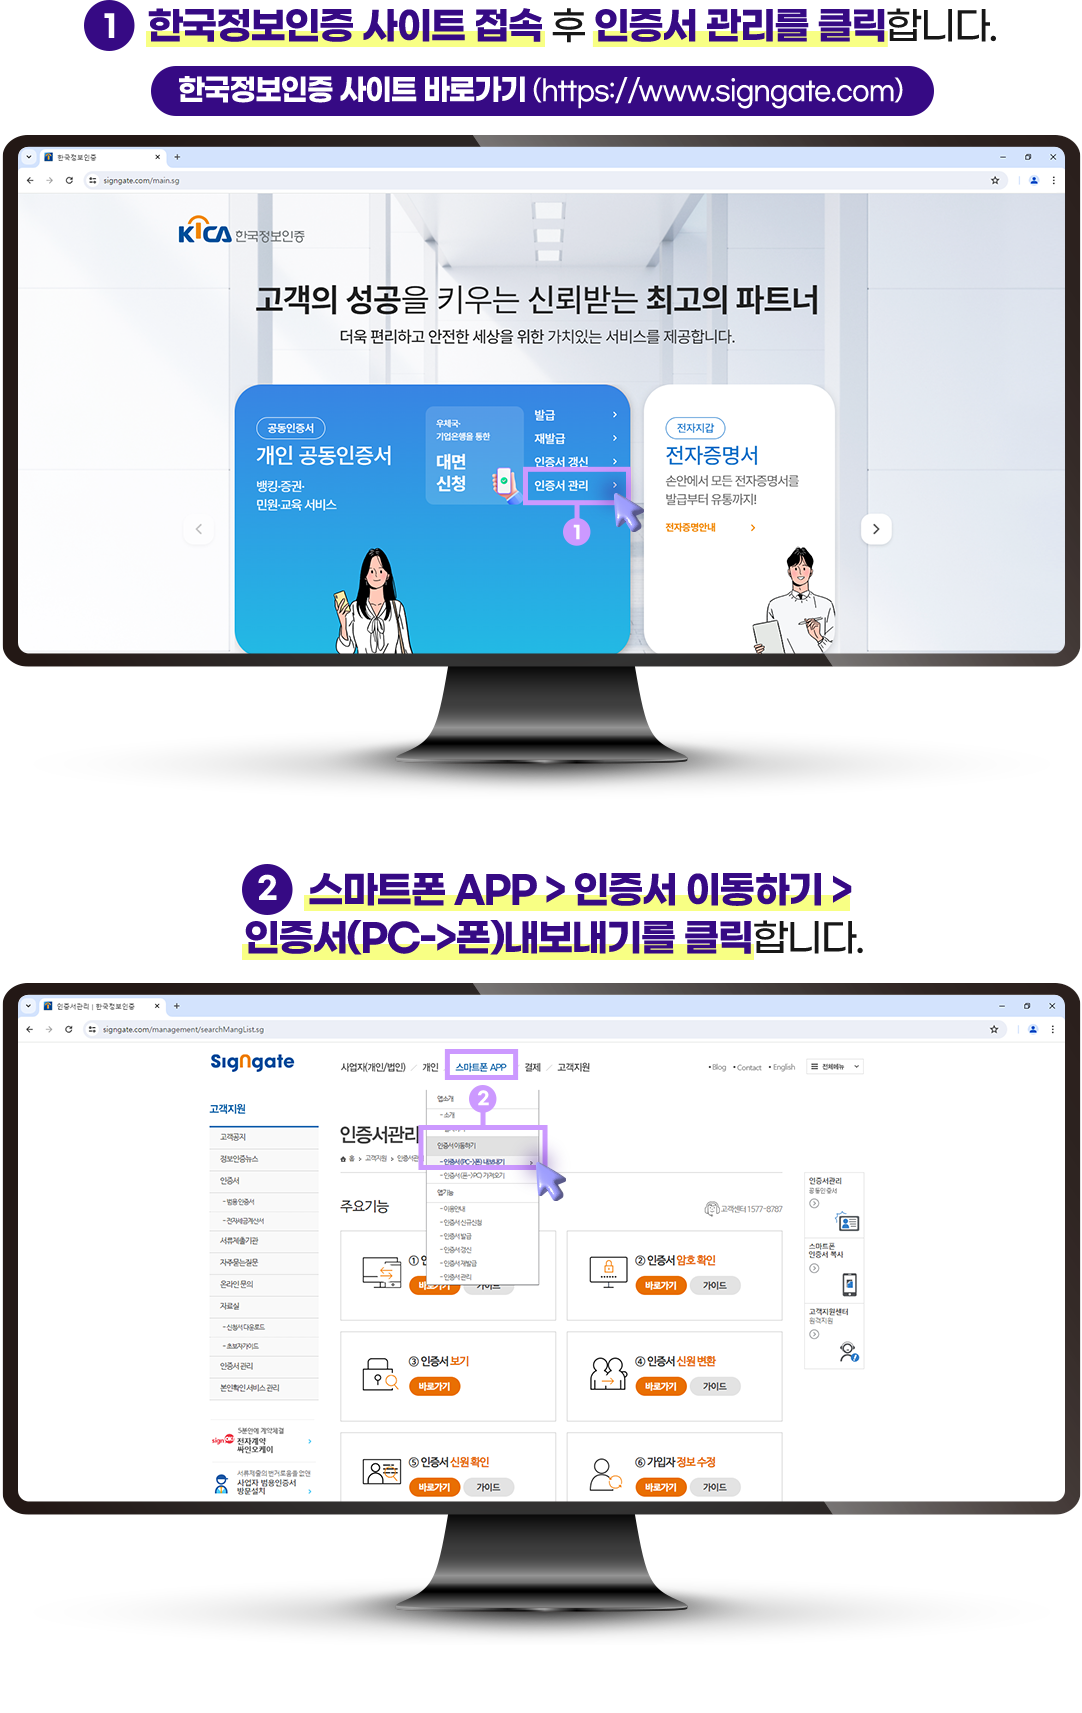 1 한국정보인증 사이트 접속 후 인증서 관리를 클릭합니다. 2 스마트폰 APP > 인증서 이동하기 > 인증서(PC->폰)내보내기를 클릭합니다.